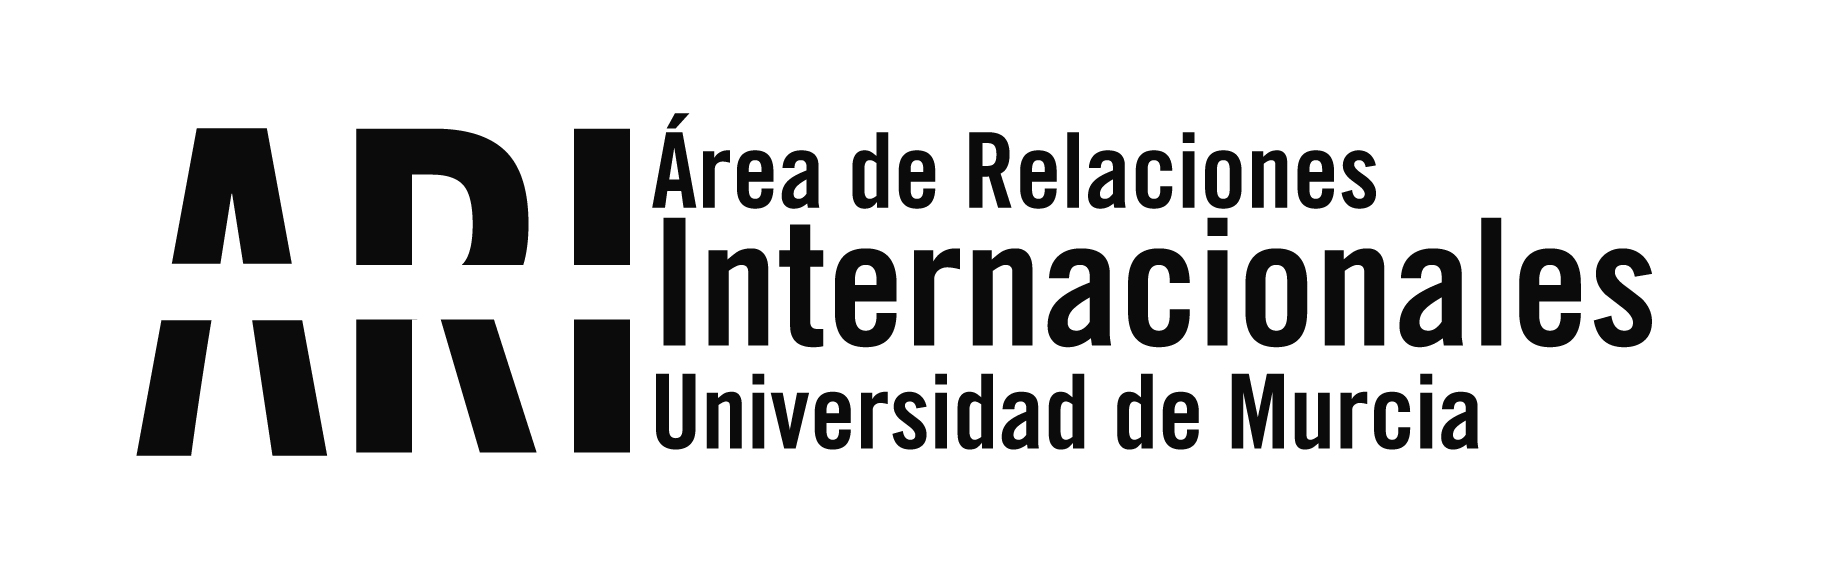 La UMU organiza las II Jornadas Universidad y Refugio los días 26 y 27 junio - Área de Relaciones Internacionales